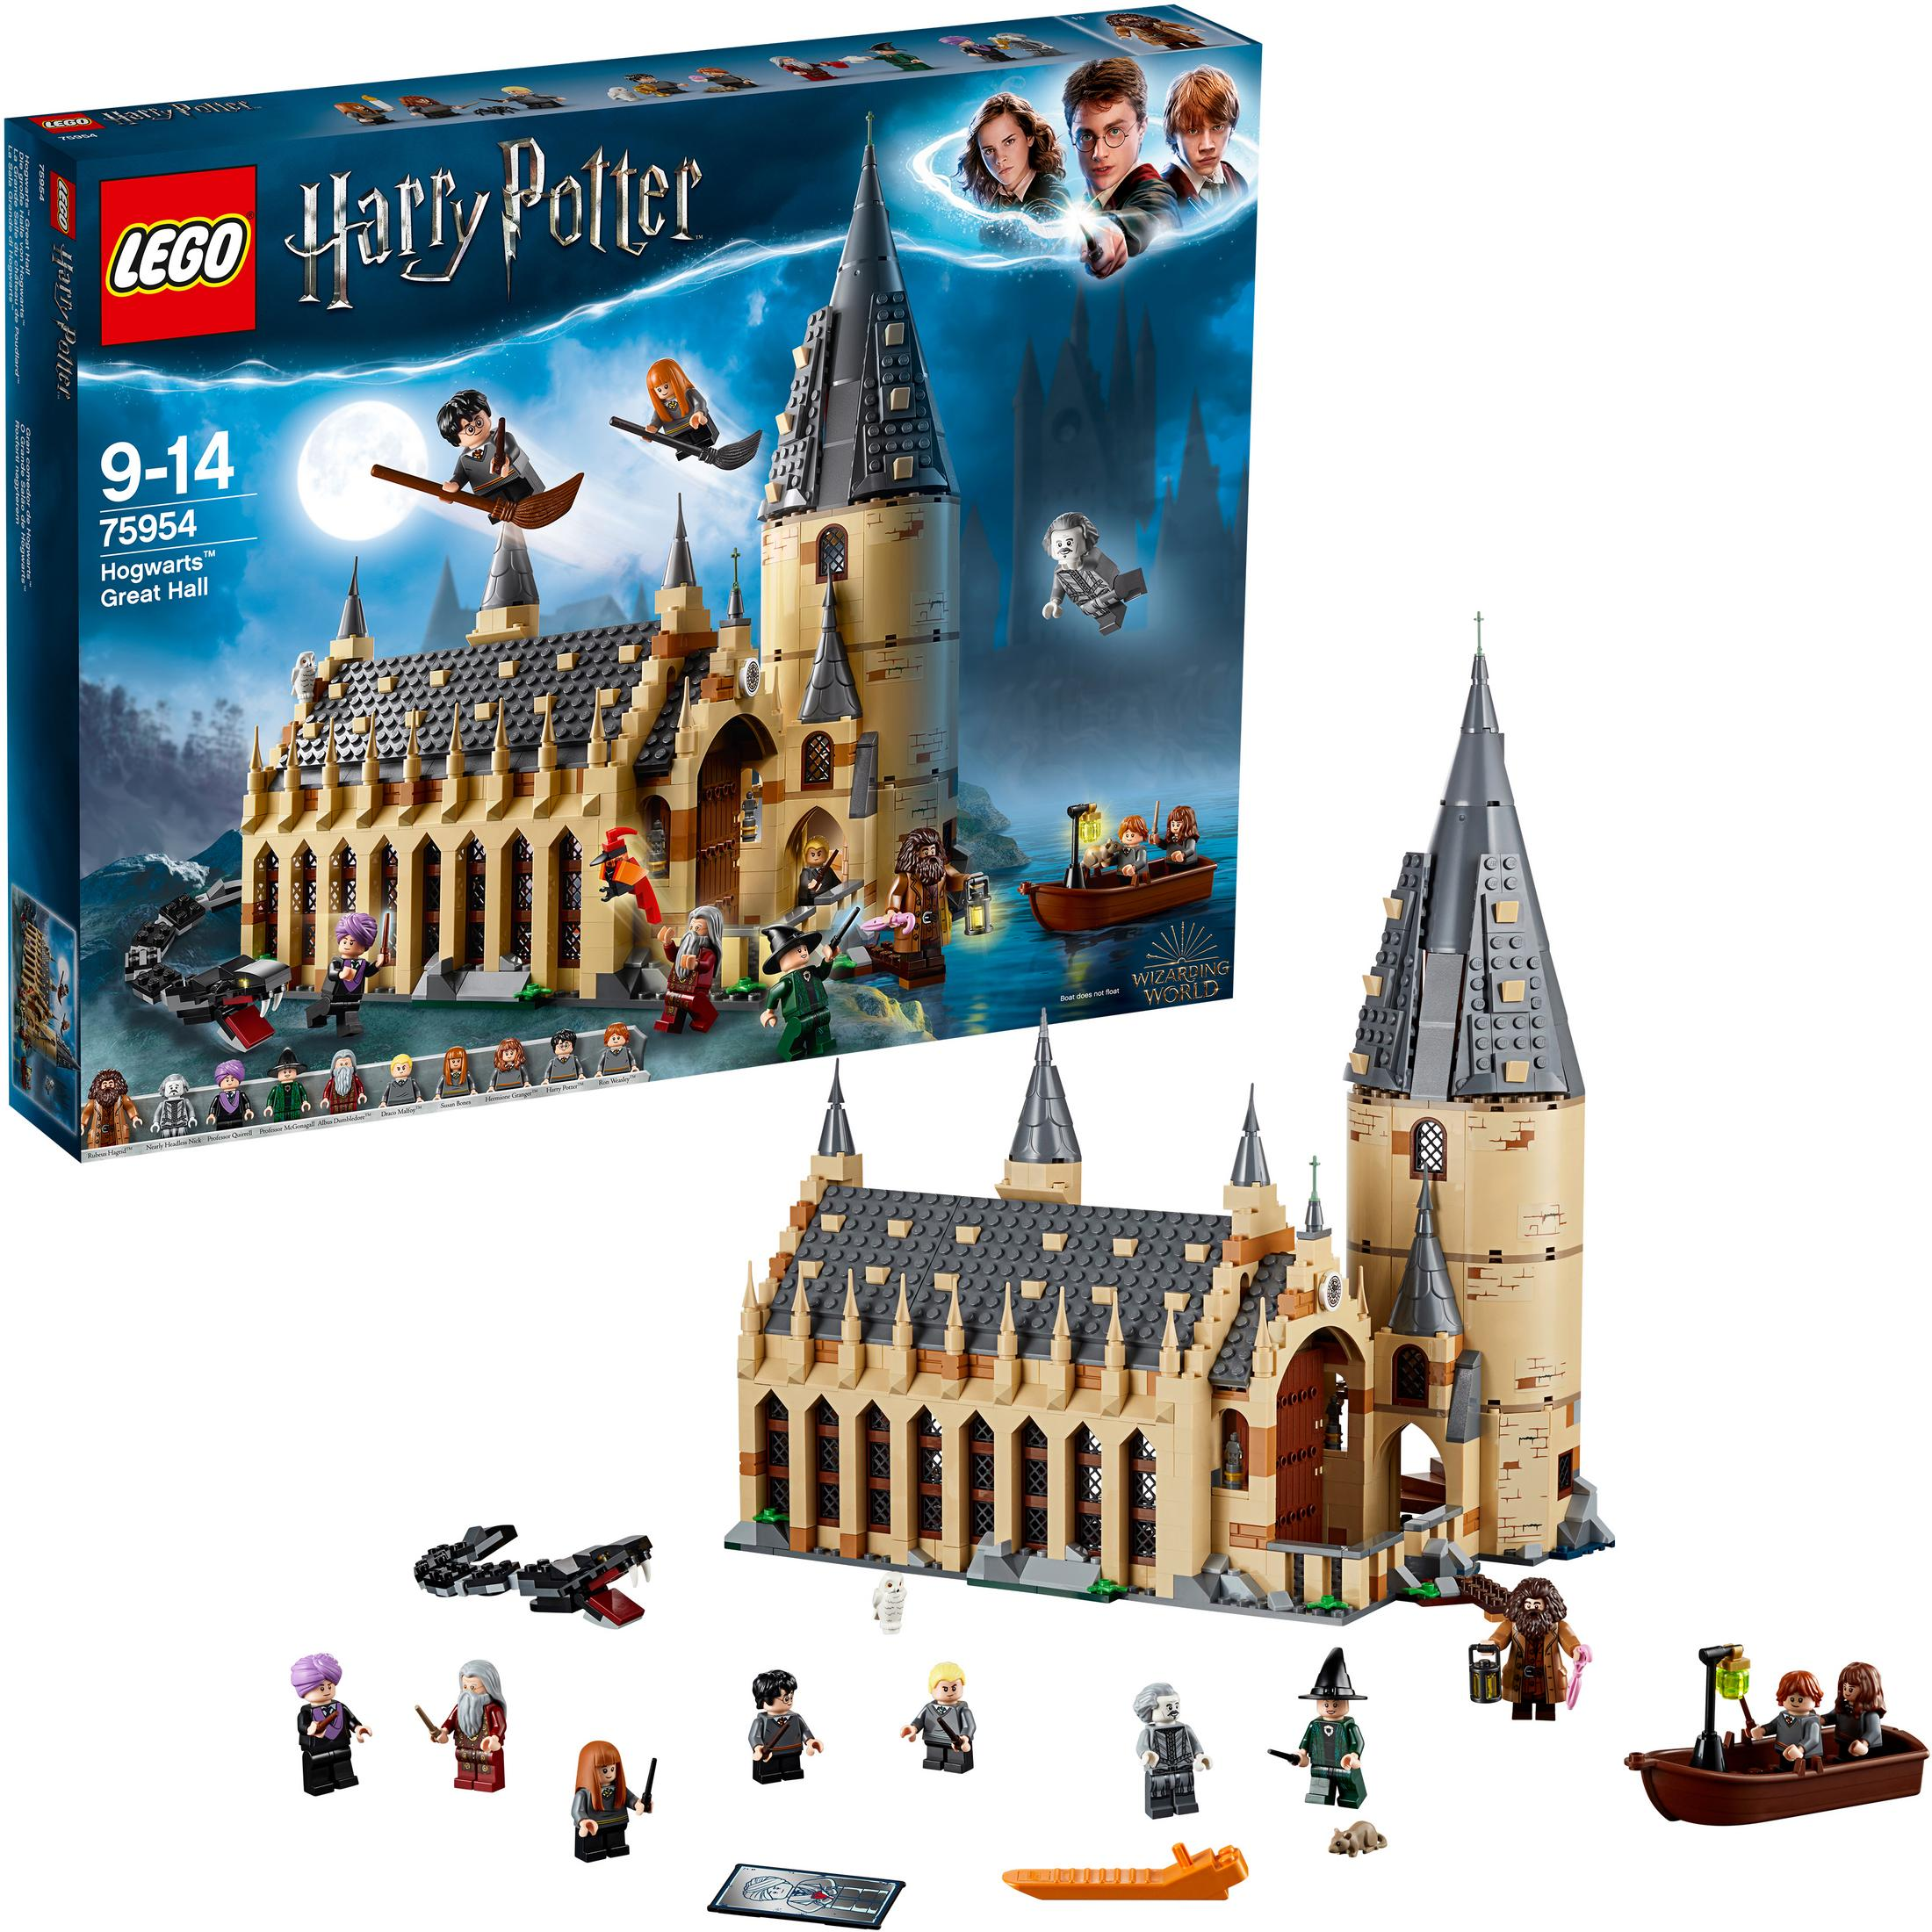 HOGWARTS GROSSE Bausatz LEGO DIE VON HALLE 75954